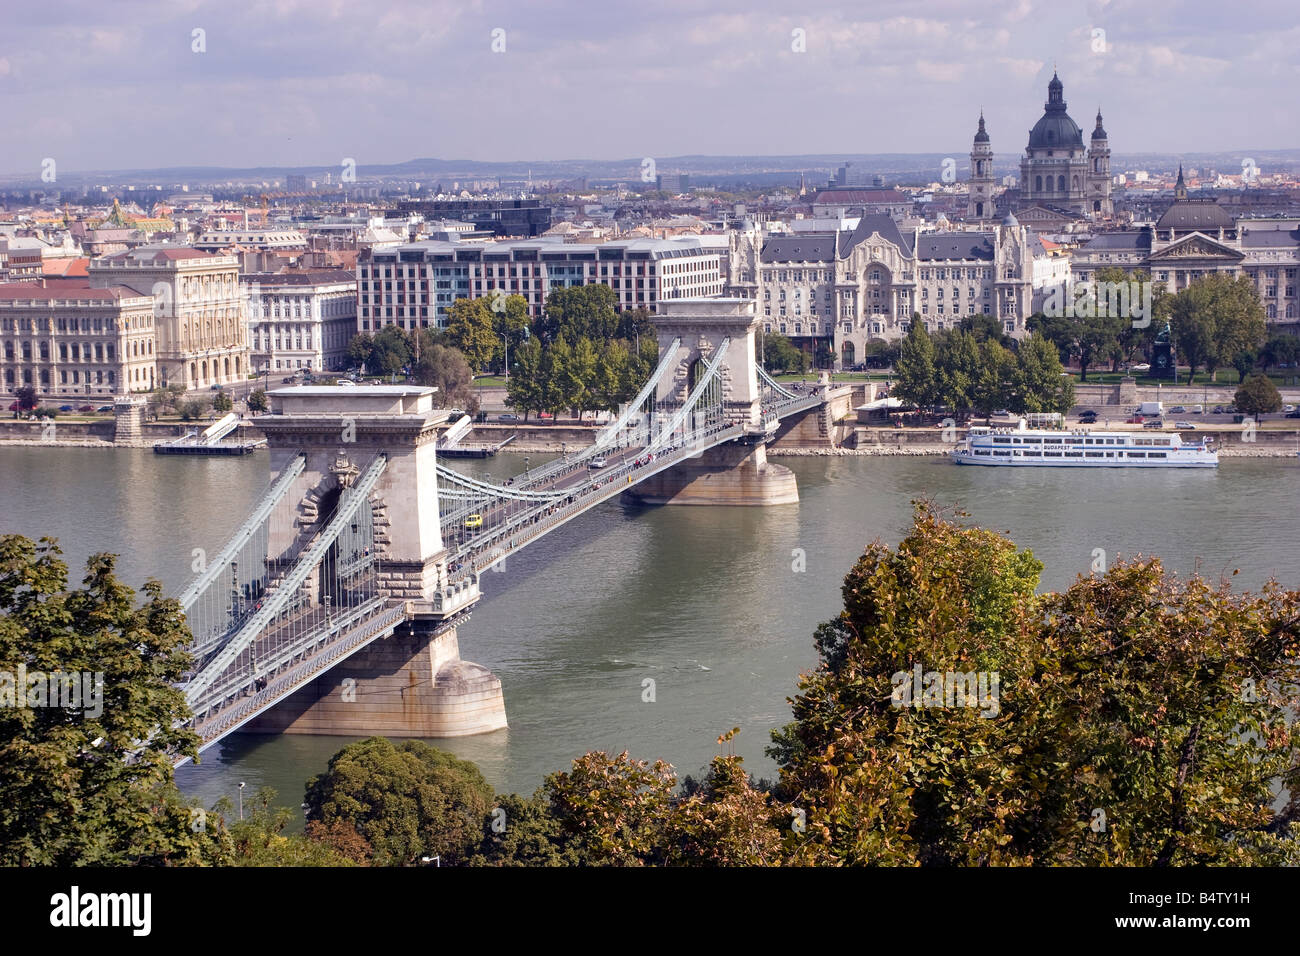 Blick auf die Kettenbrücke in Budapest, die erste dauerhafte Verbindung zwischen Buda und Pestin in Ungarn (Széchenyi Lánchíd) Stockfoto